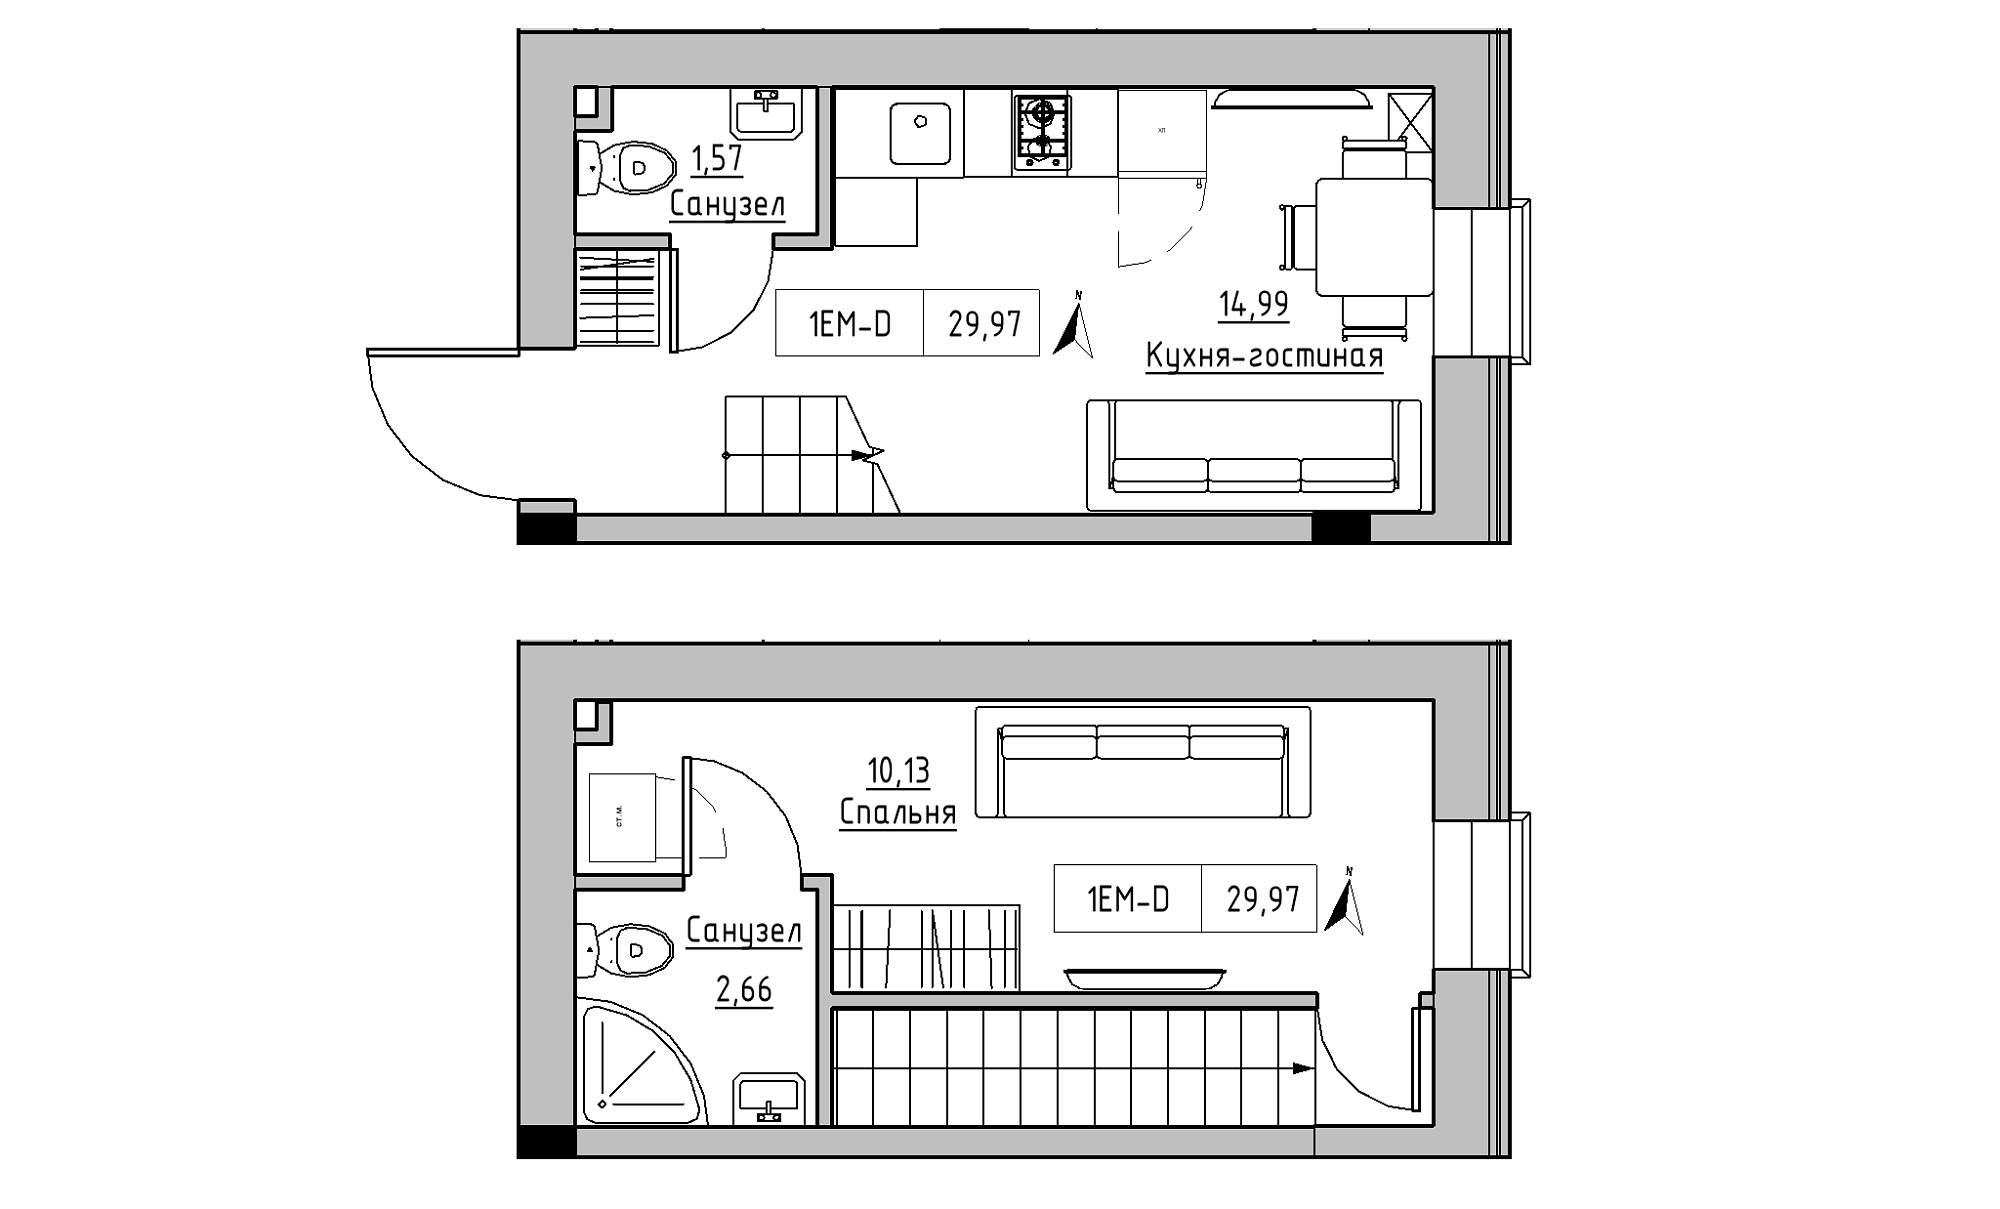 Planning 2-lvl flats area 29.97m2, KS-023-03/0005.